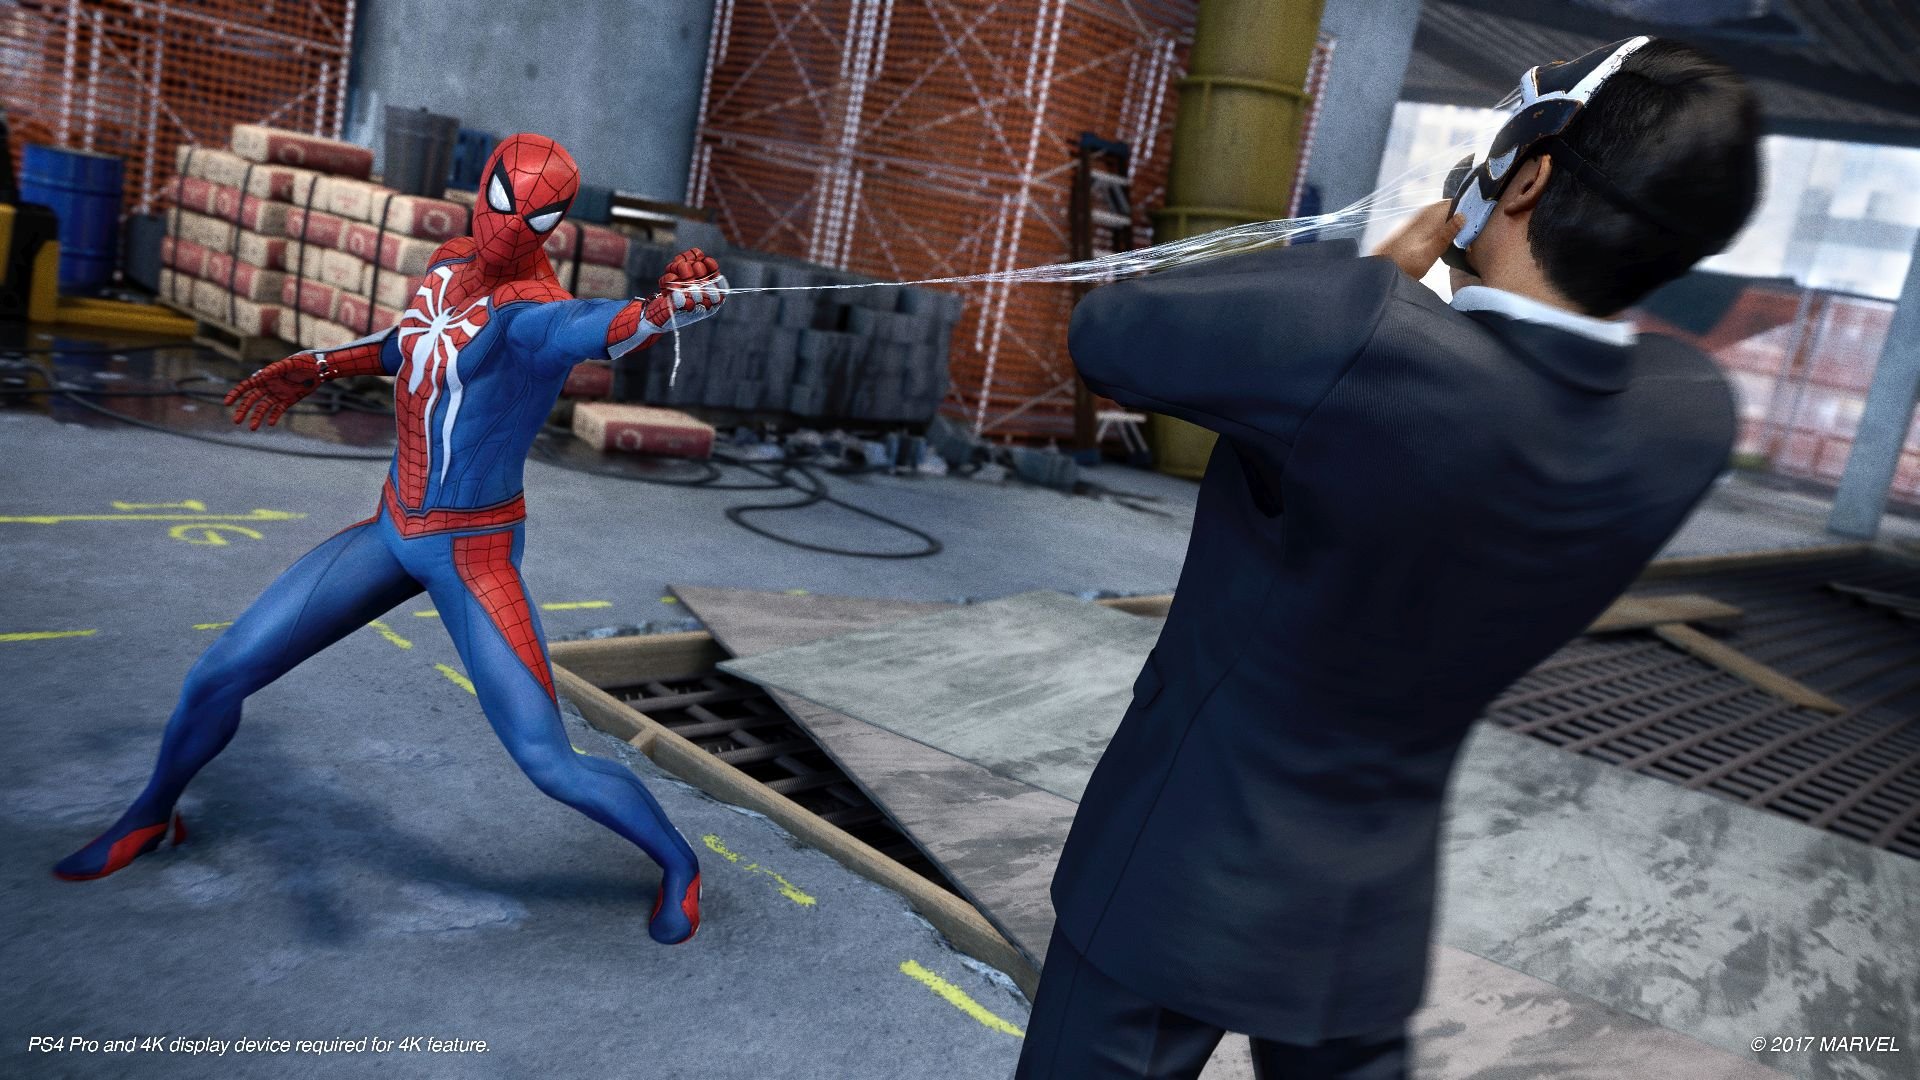 Download Marvel Spider Man MOD APK 1.15 (Full Game) For Mobile